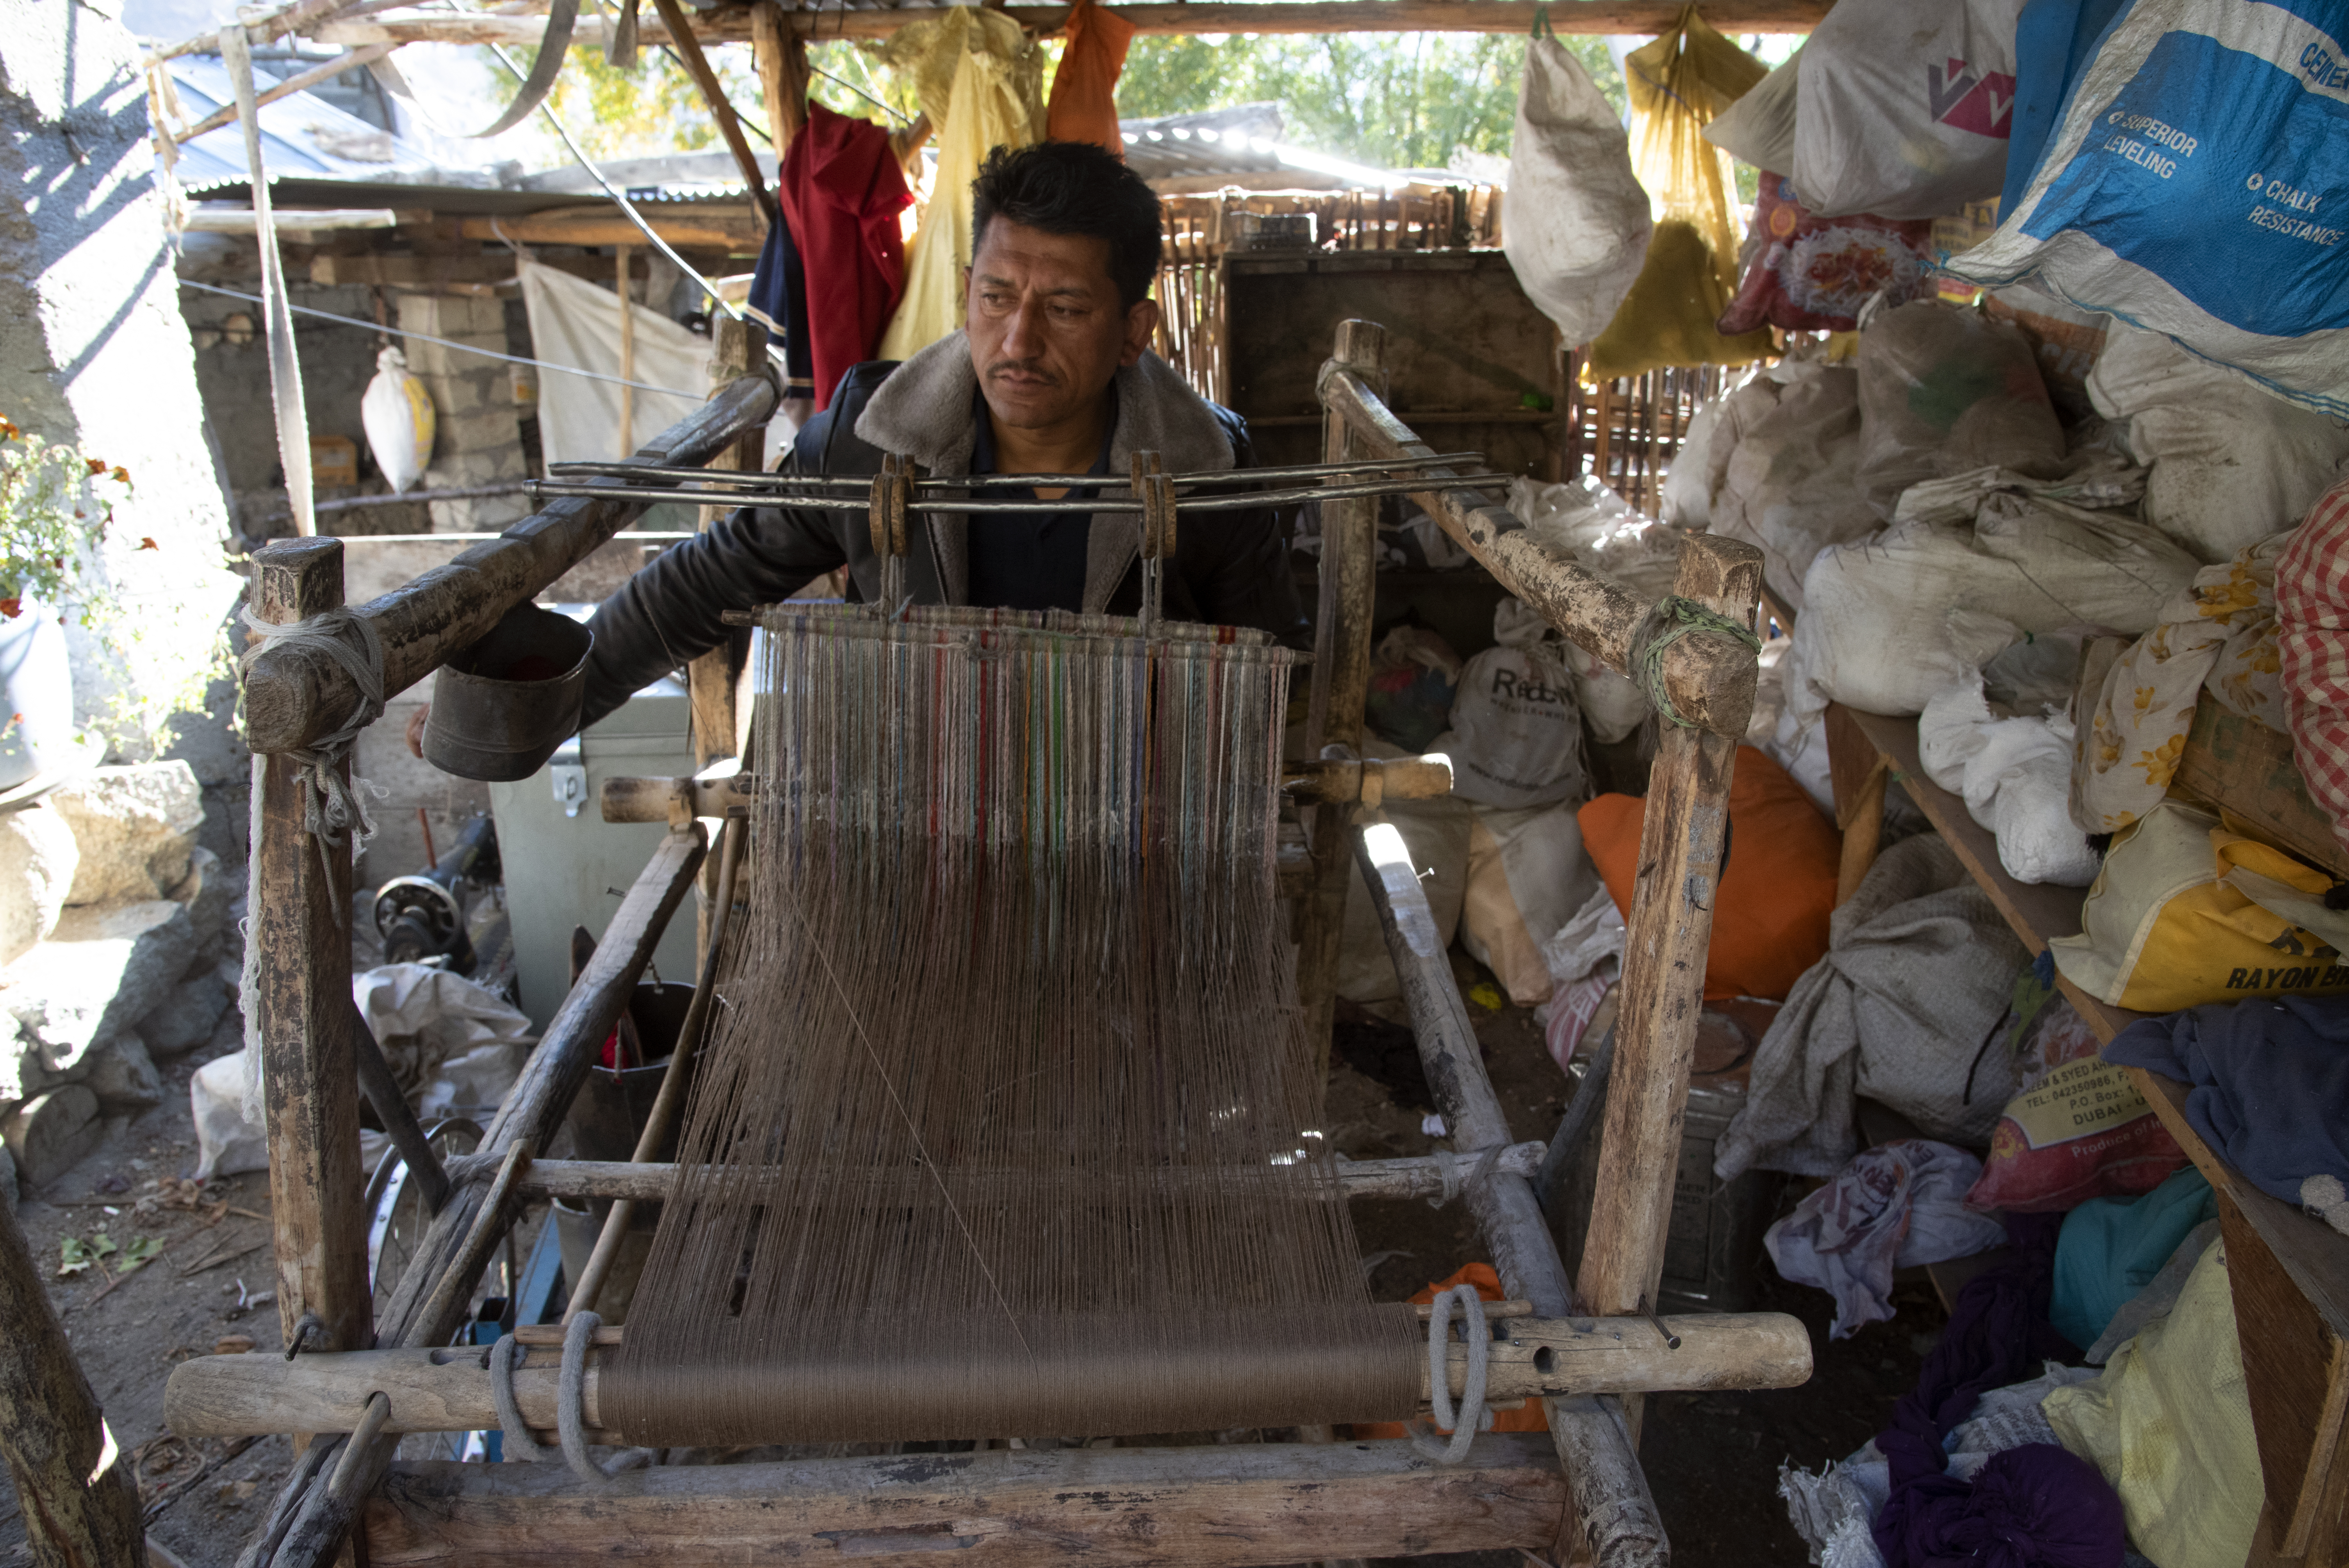 A man sits at a loom and weaves (image: Sugato Mukherjee)